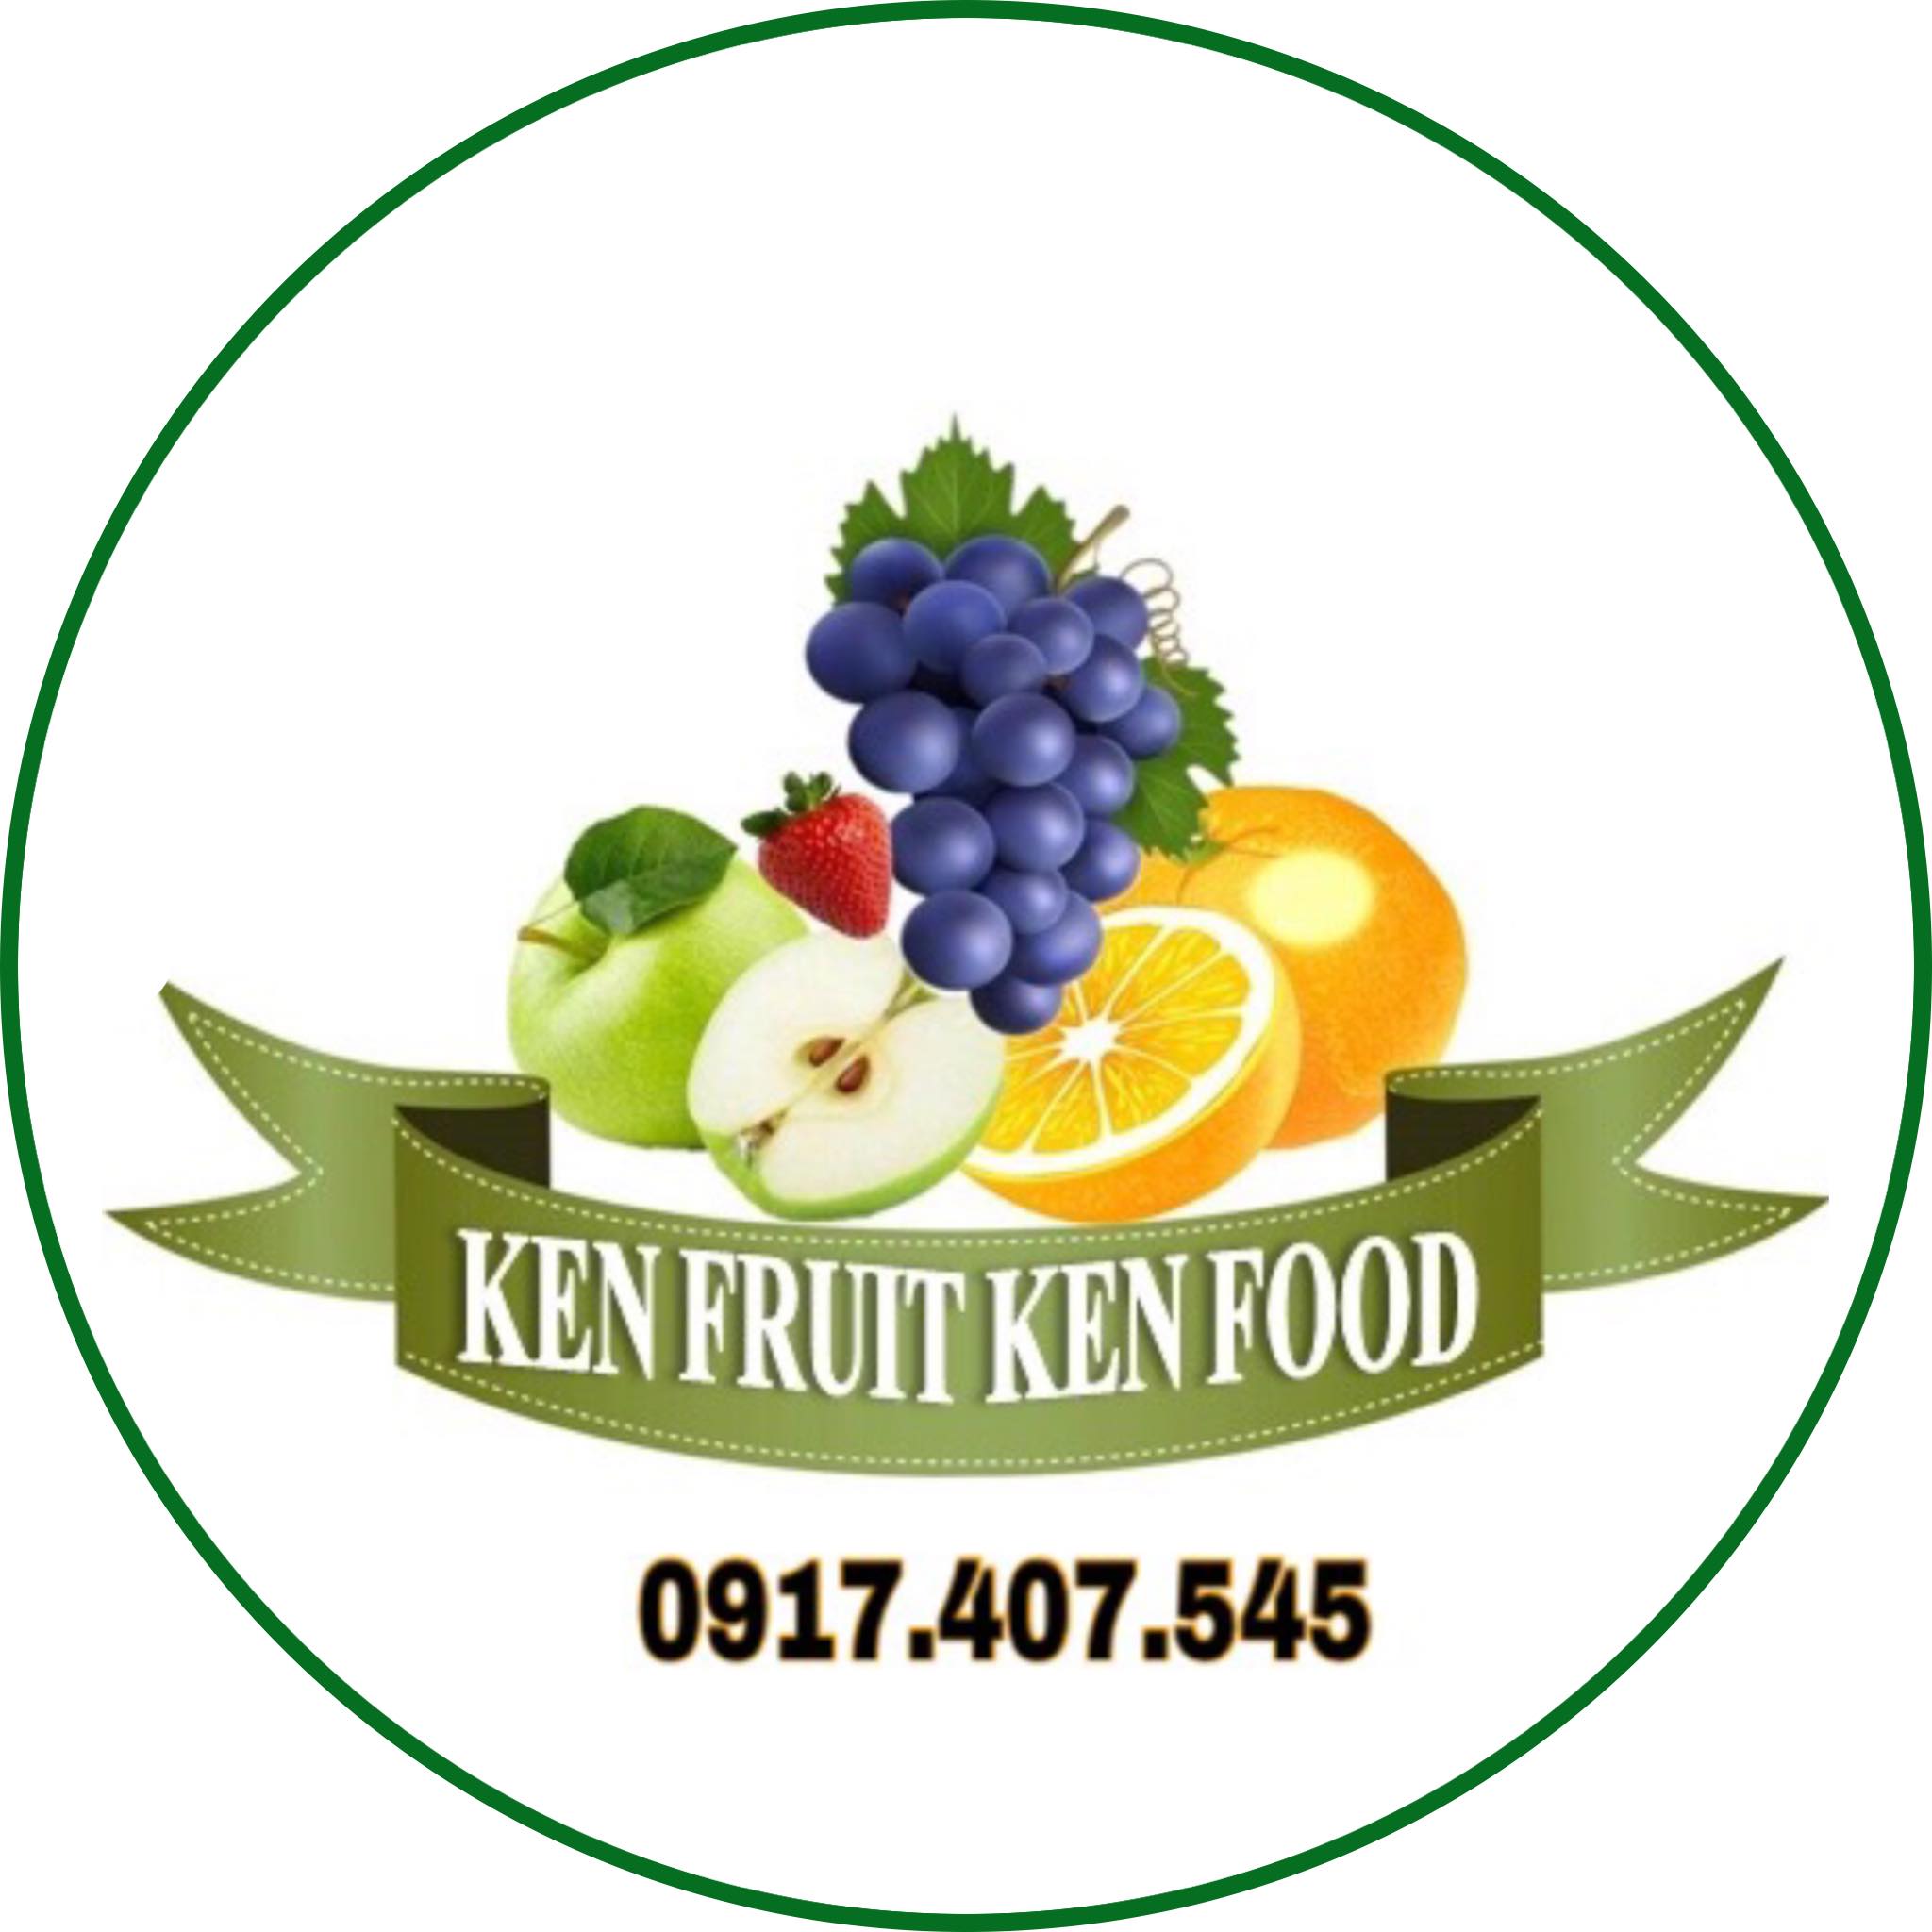 Ken Fruit